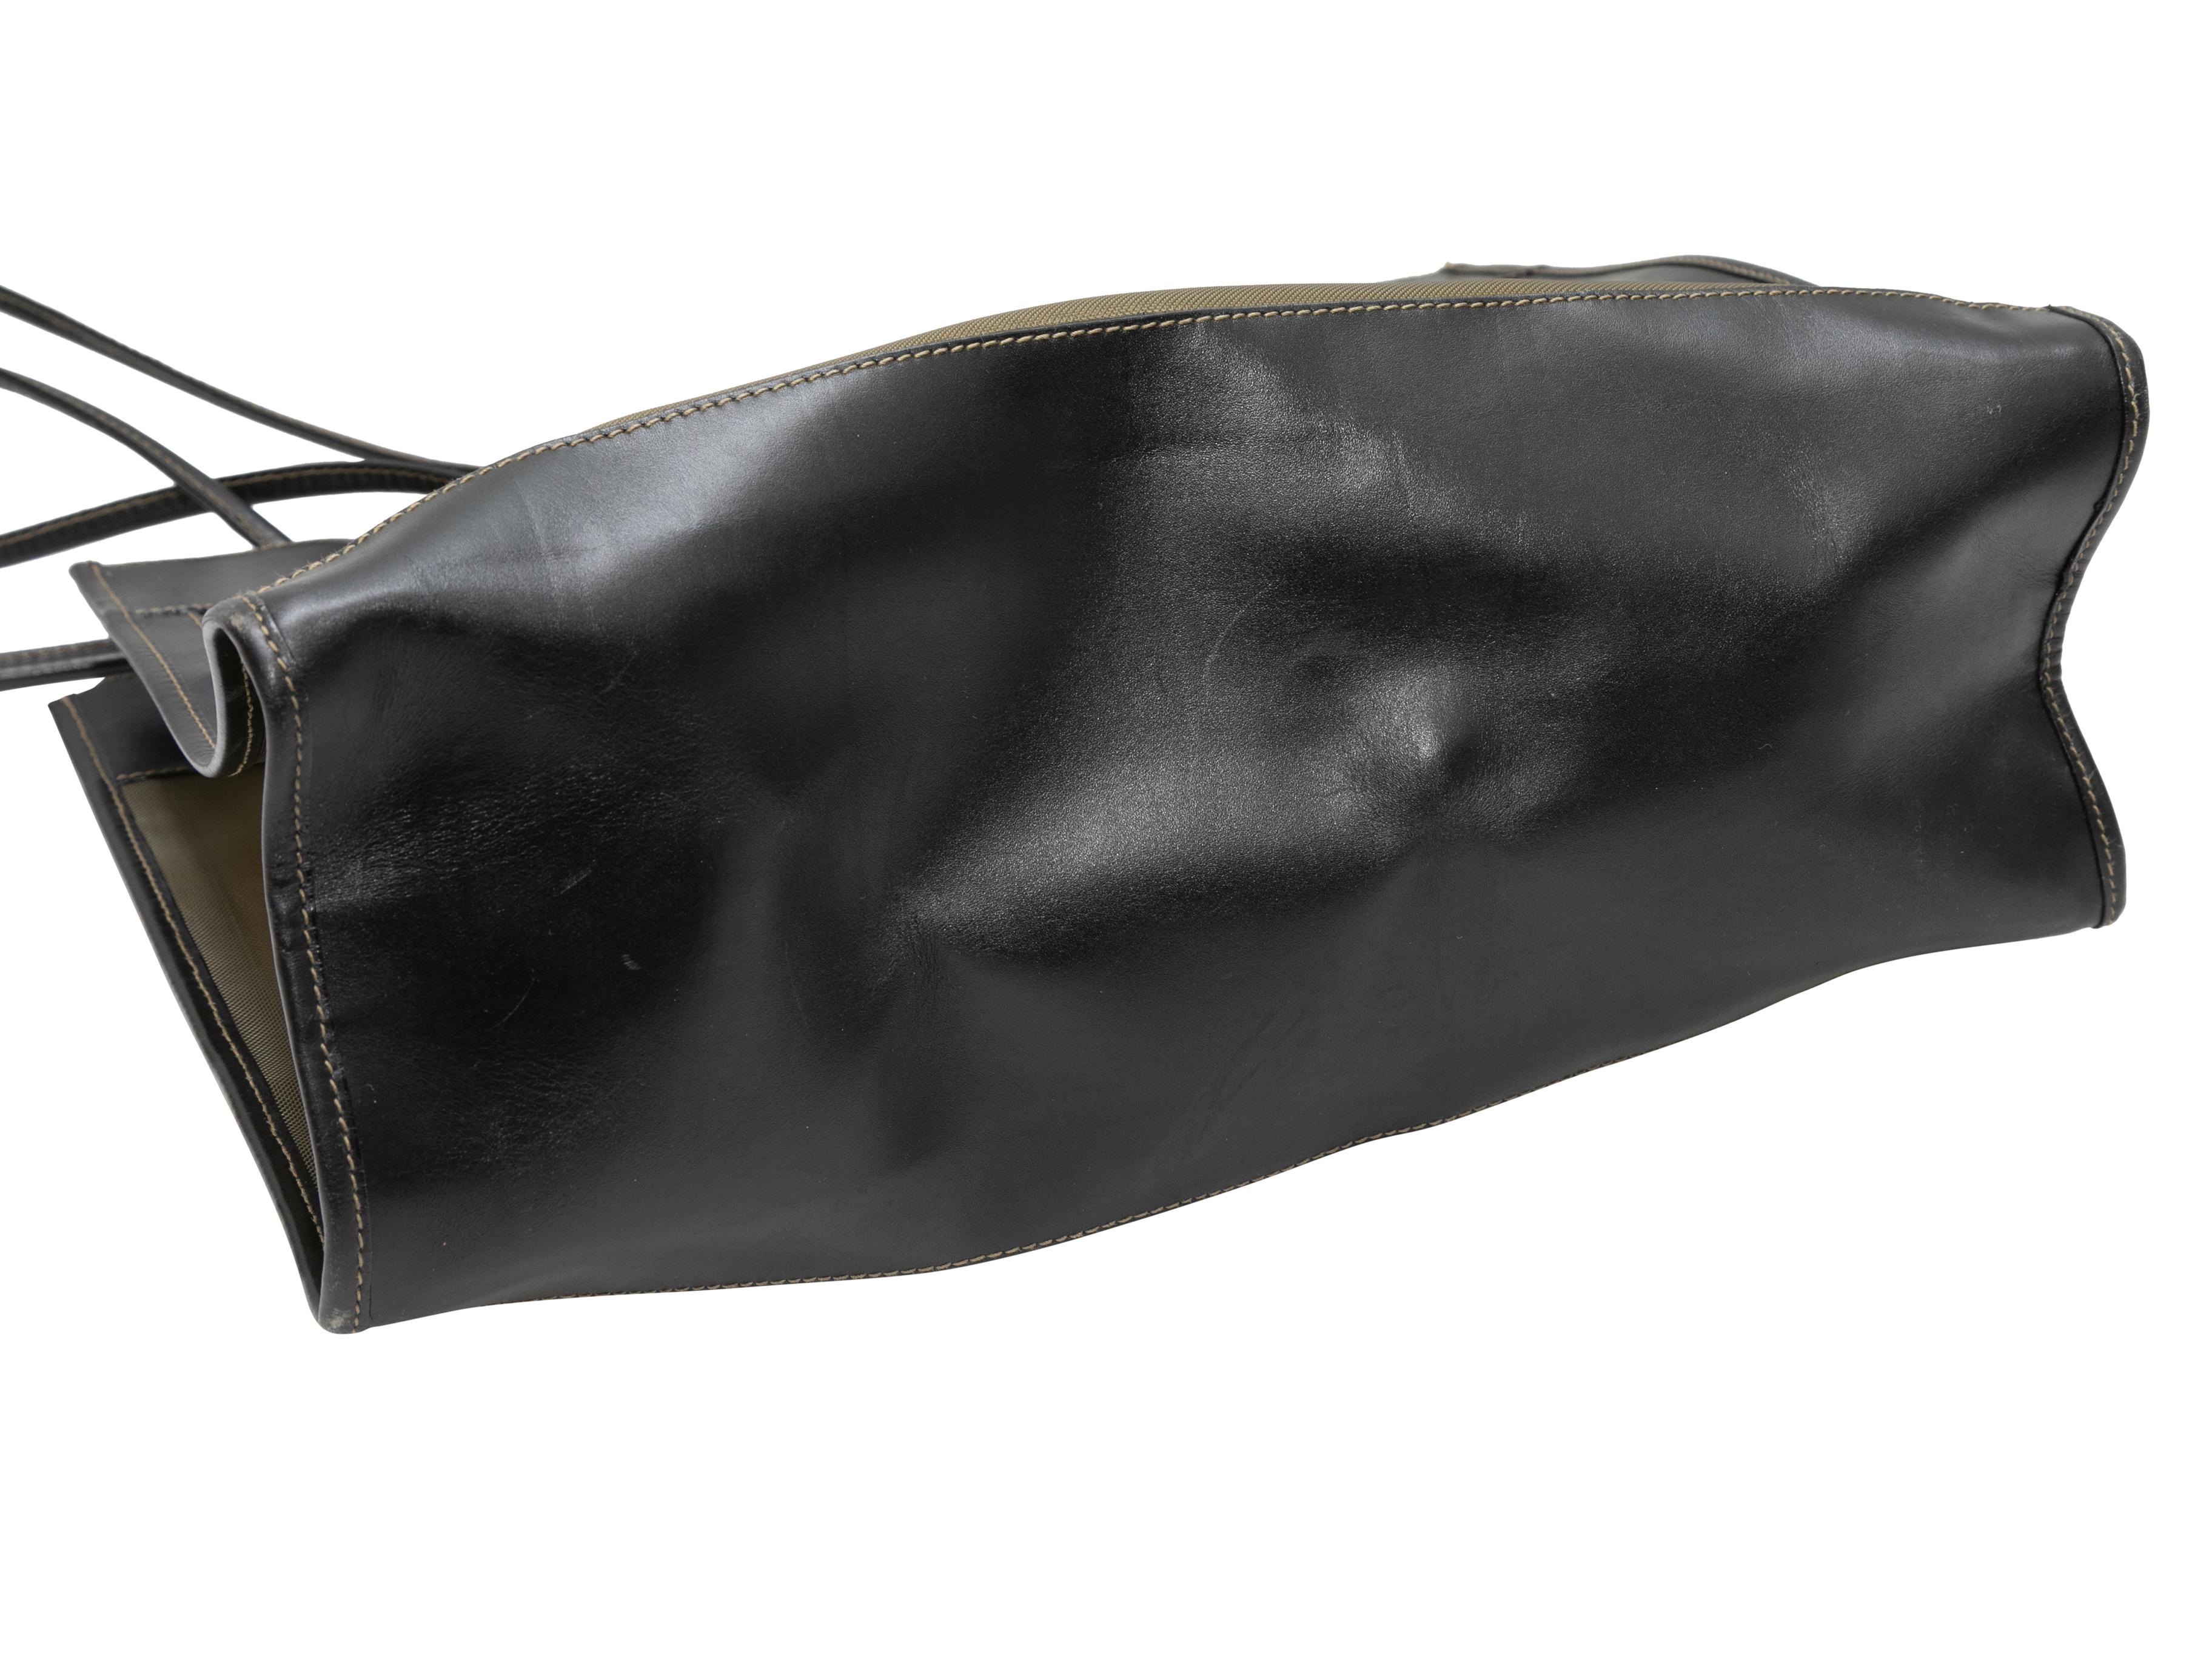 Vintage Schwarz & Gold Fendi Mesh & Leder Tote Bag. Diese Tragetasche hat einen Körper aus Mesh und Leder, goldfarbene Beschläge und zwei gerollte Schulterriemen. 14